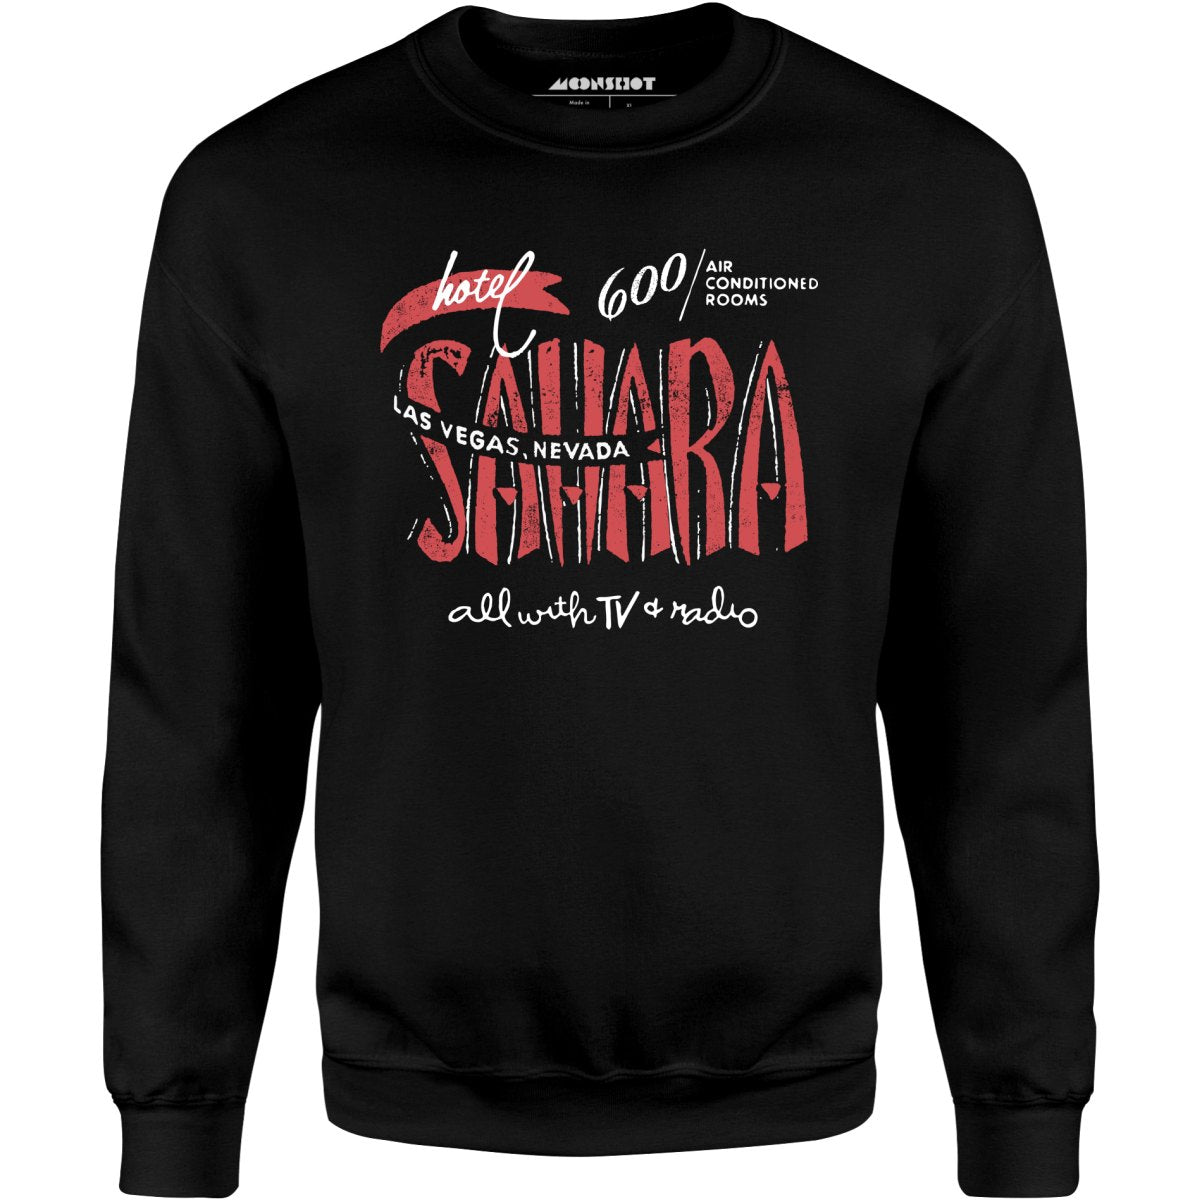 Hotel Sahara - Vintage Las Vegas - Unisex Sweatshirt